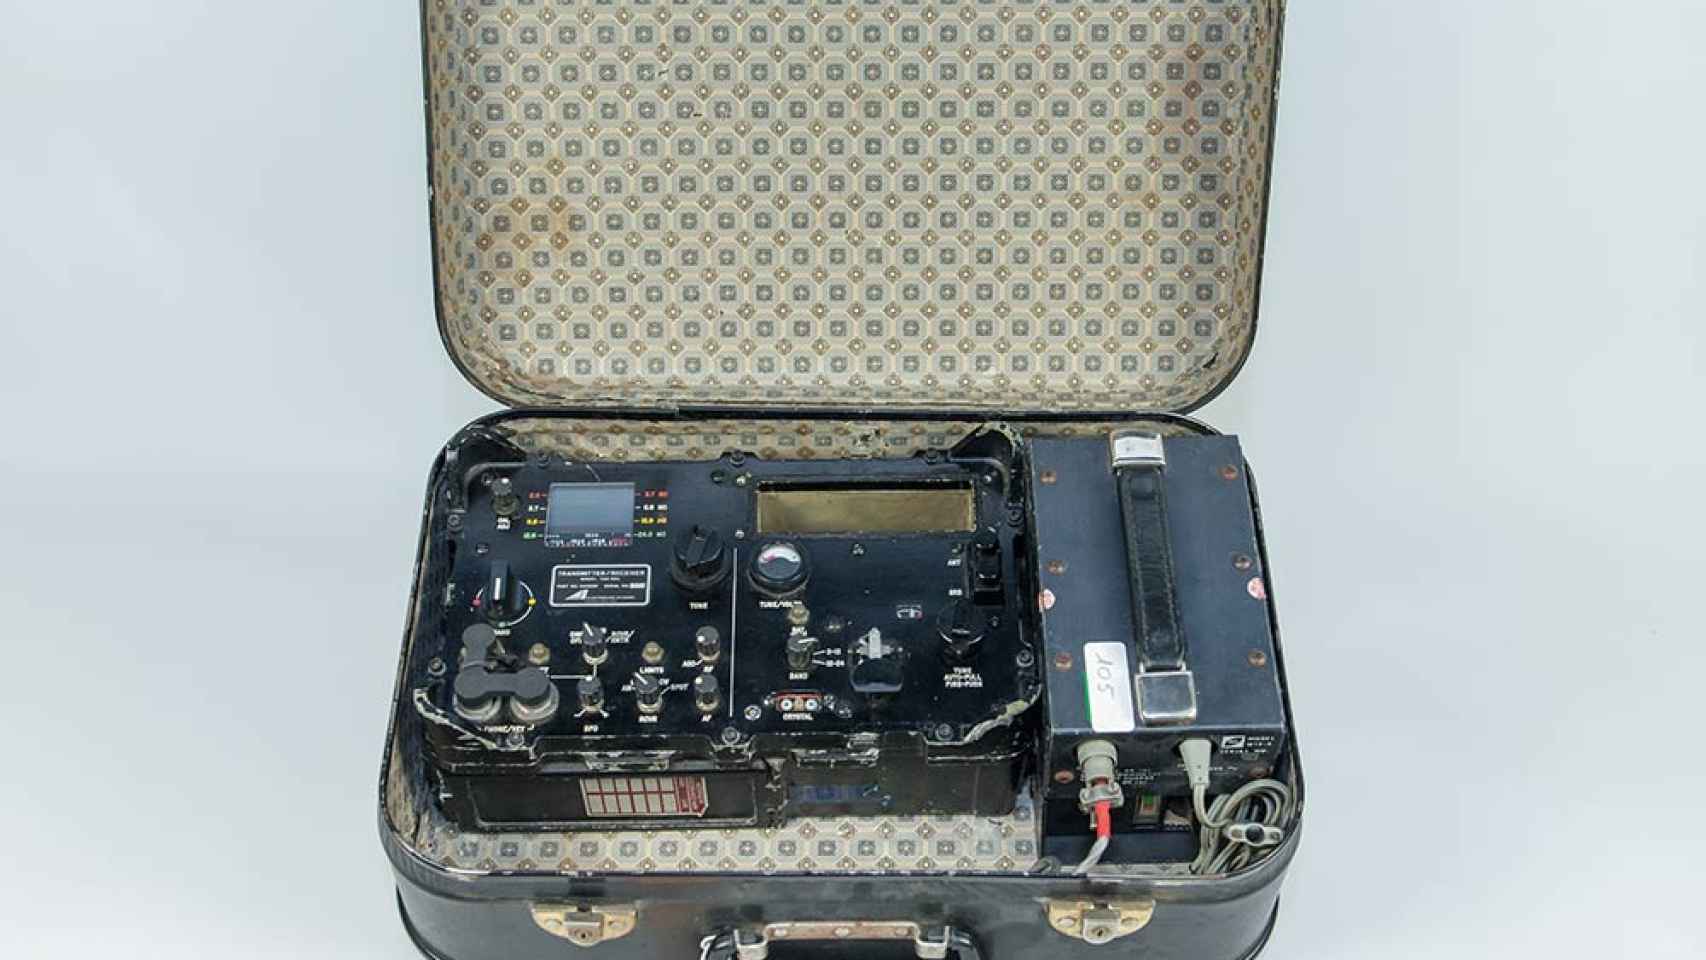 Equipo de radio utilizado por agentes de la CIA en la Guerra Fría